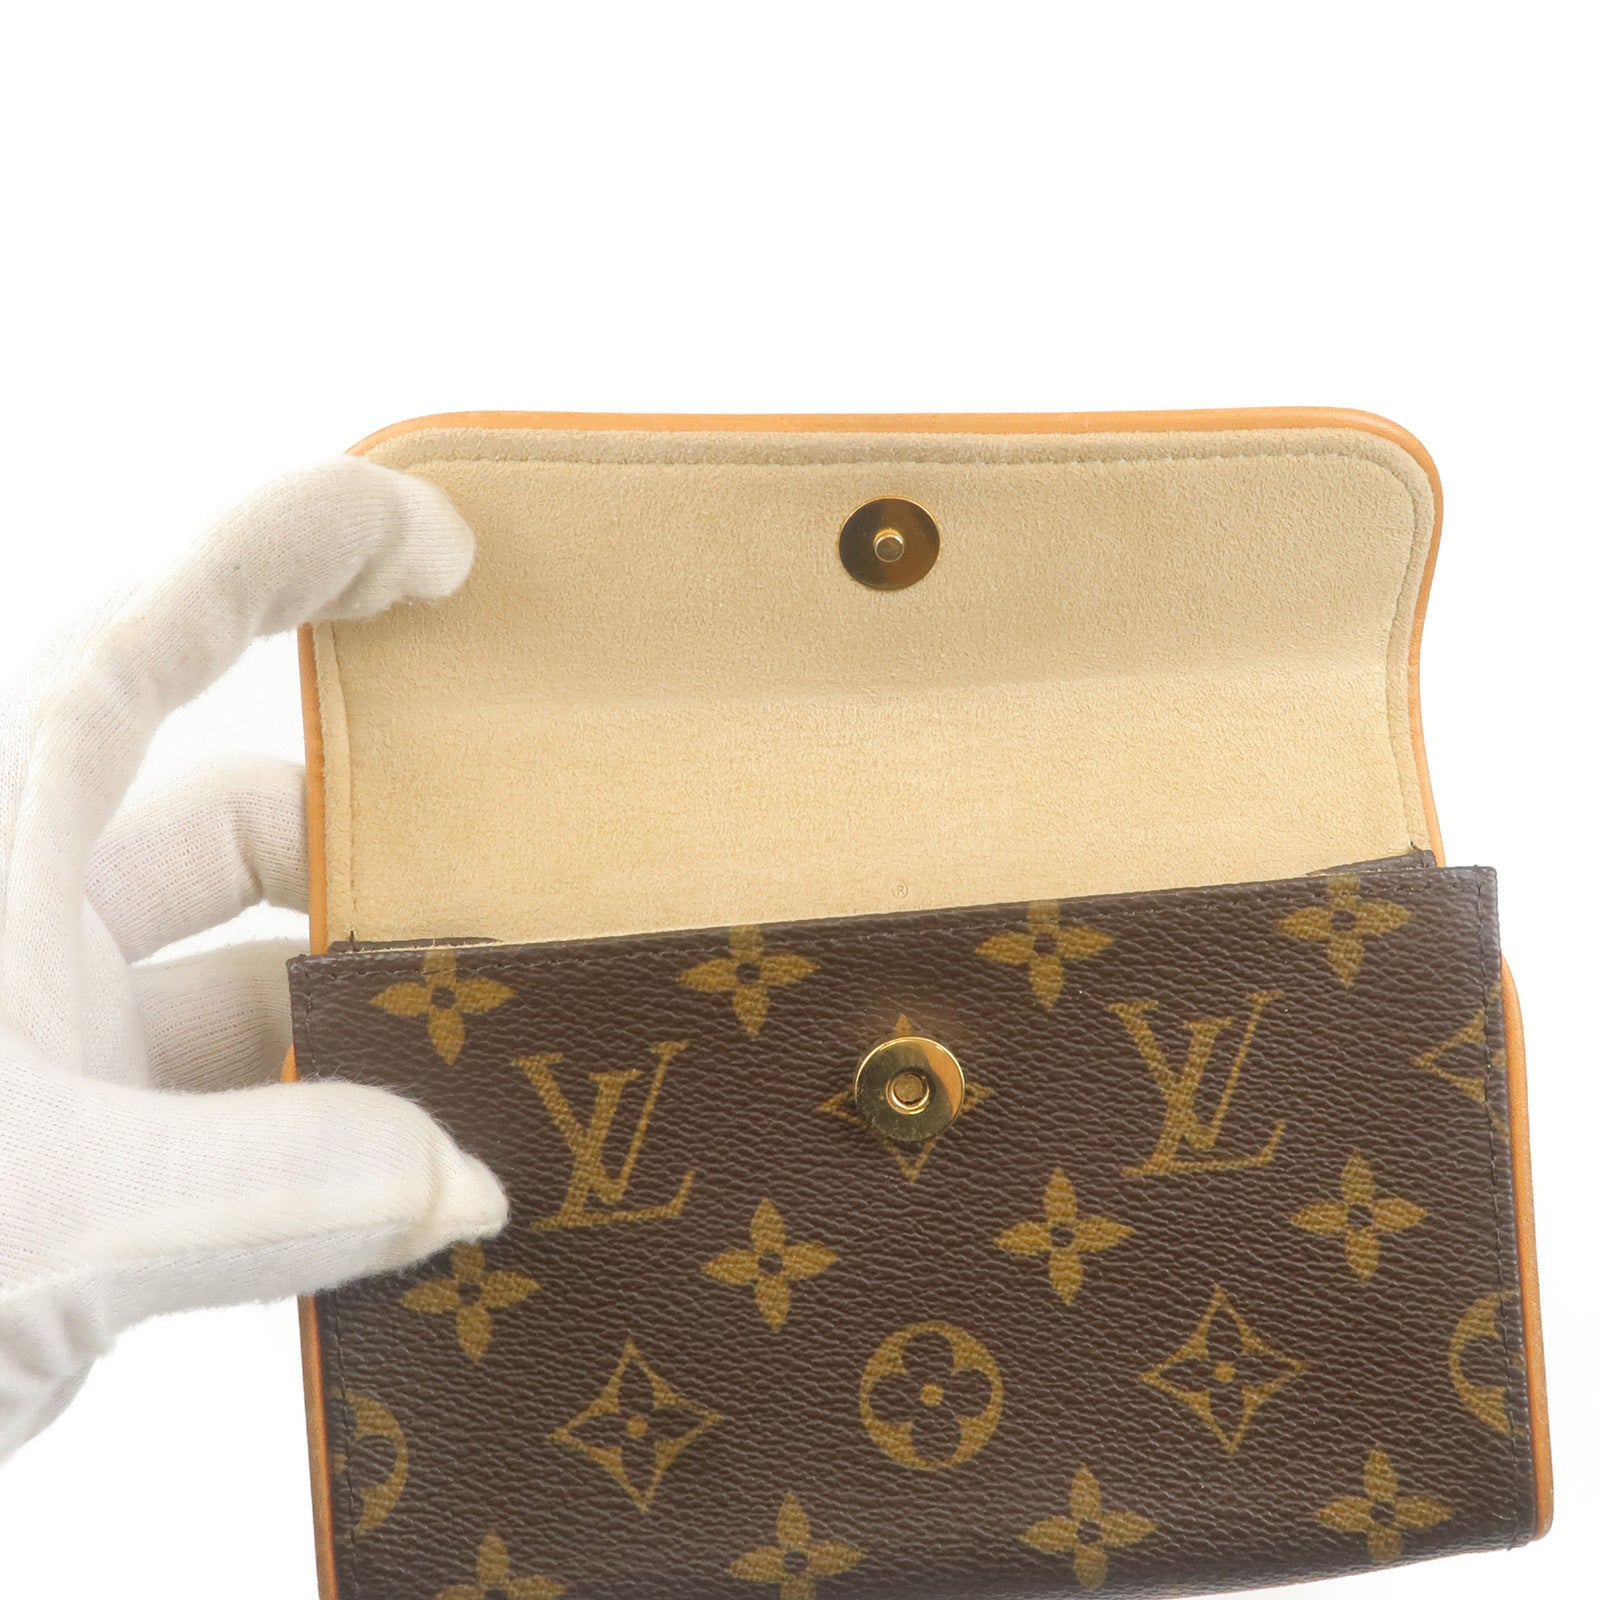 Authentic Louis Vuitton Mini Lin Croisette French Puse Wallet 